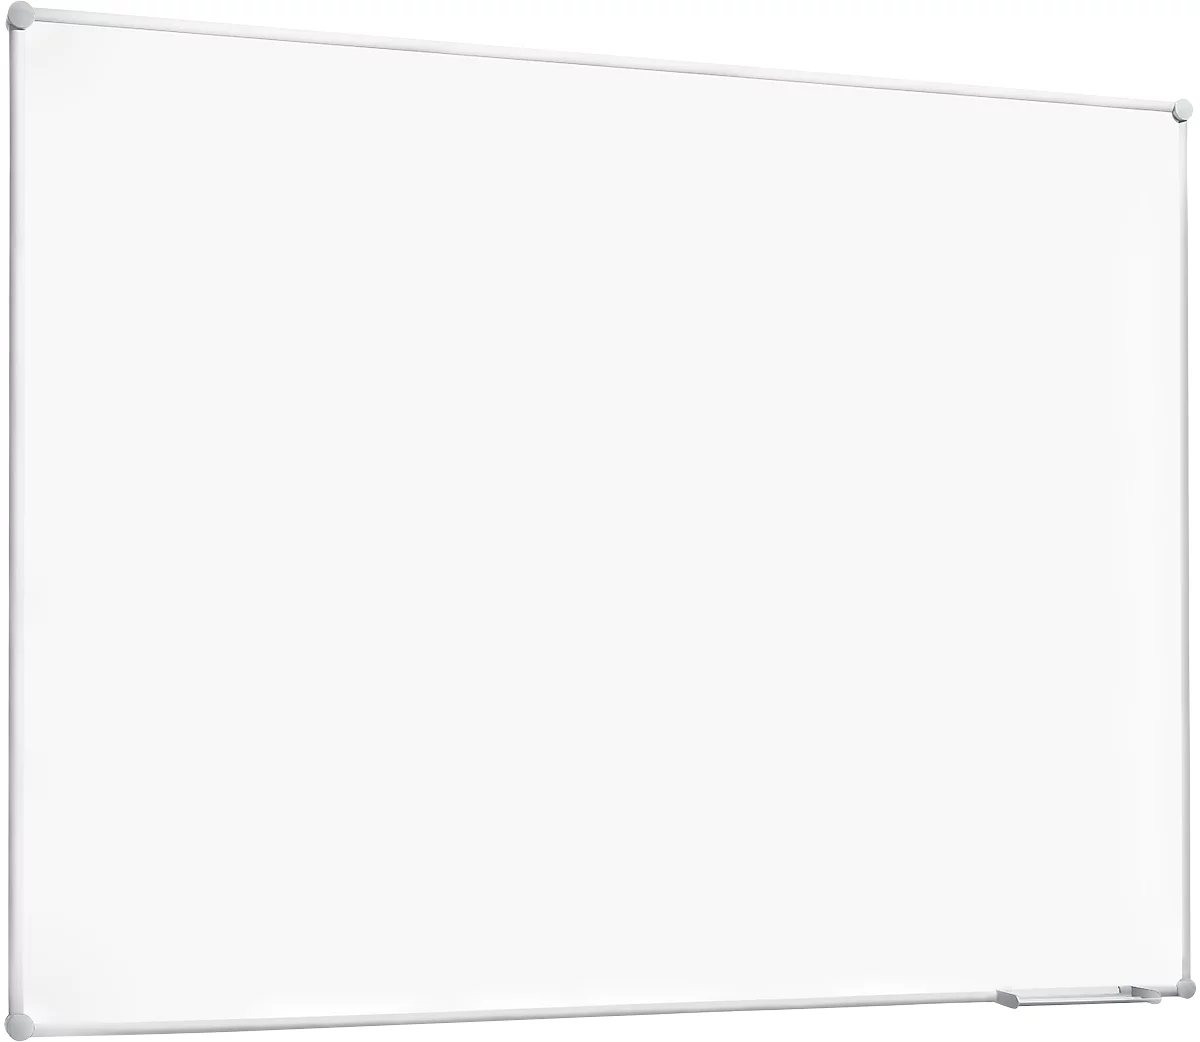 Whiteboard 2000 MAULpro, weiß kunststoffbeschichtet, Rahmen alusilber, 1200 x 1800 mm